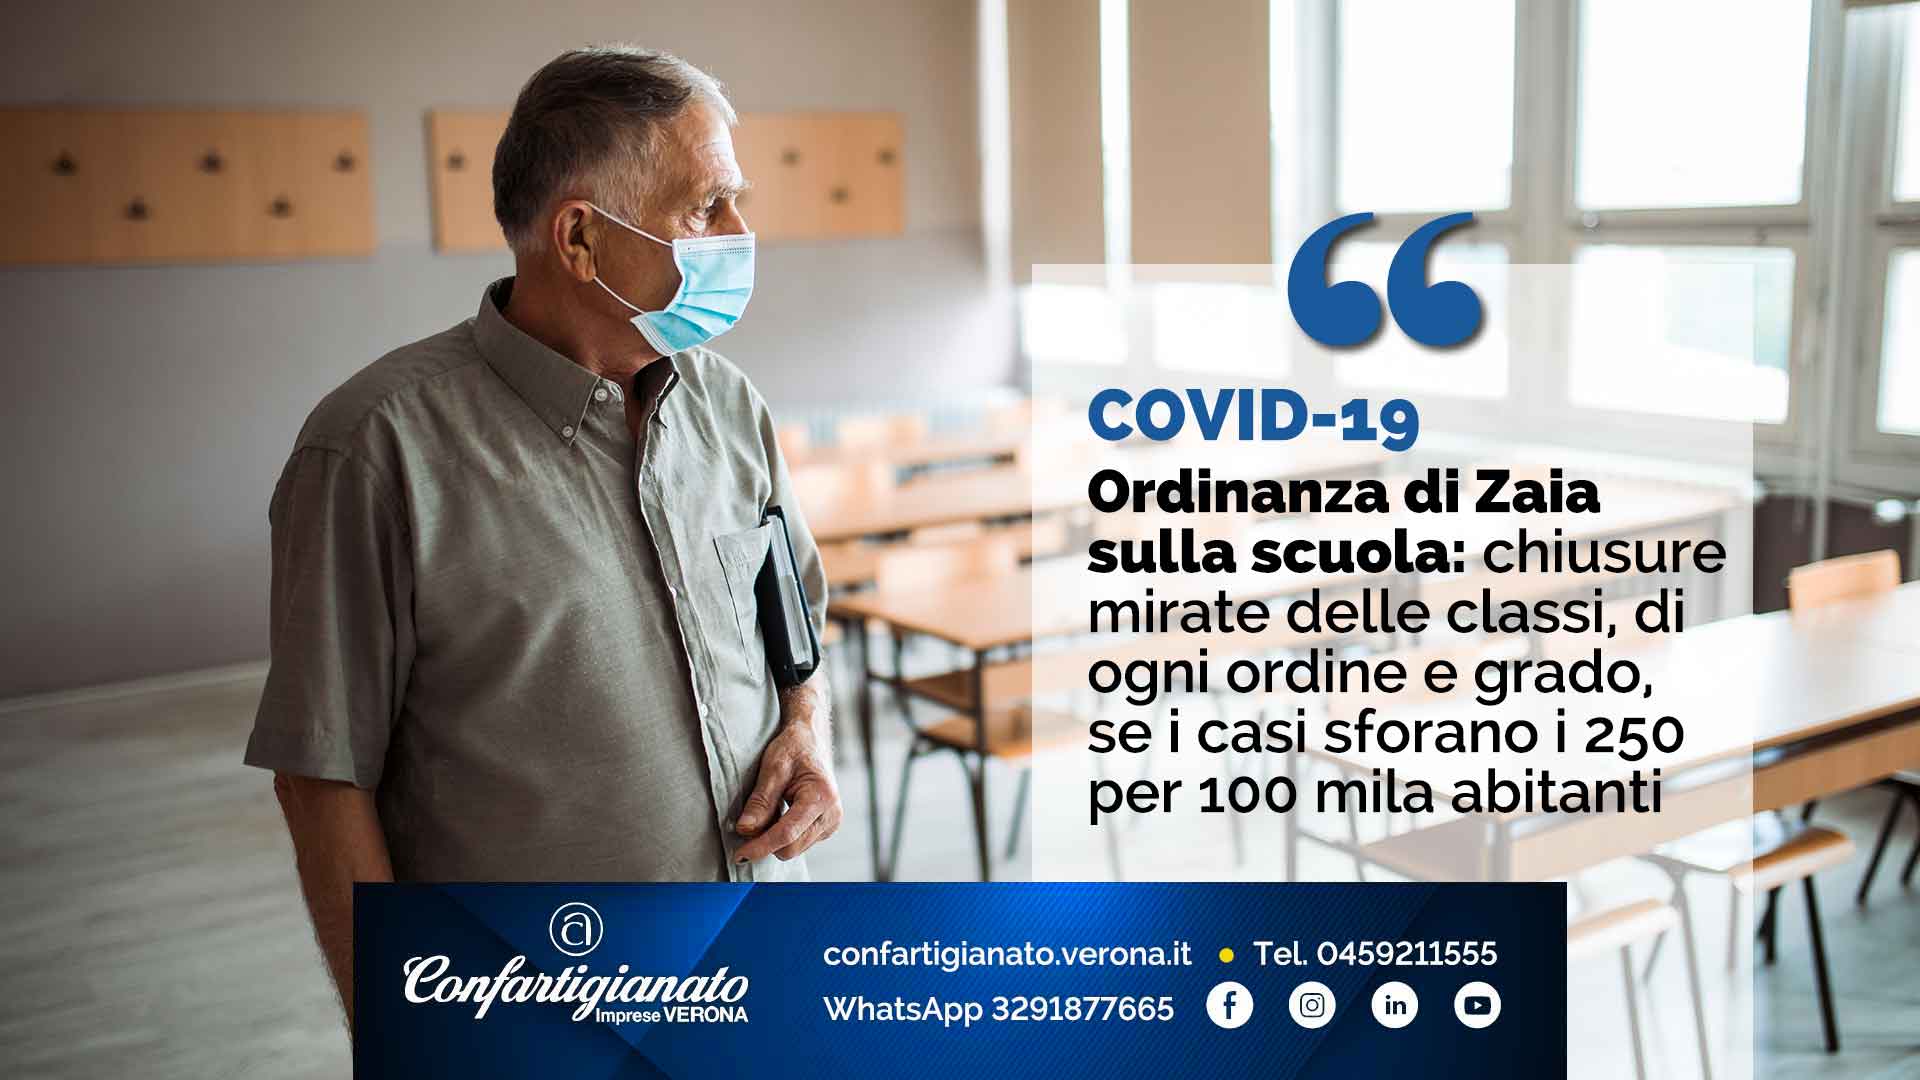 COVID-19 – Ordinanza di Zaia sulla scuola: chiusure mirate delle classi, di ogni ordine e grado, se i casi sforano i 250 per 100 mila abitanti